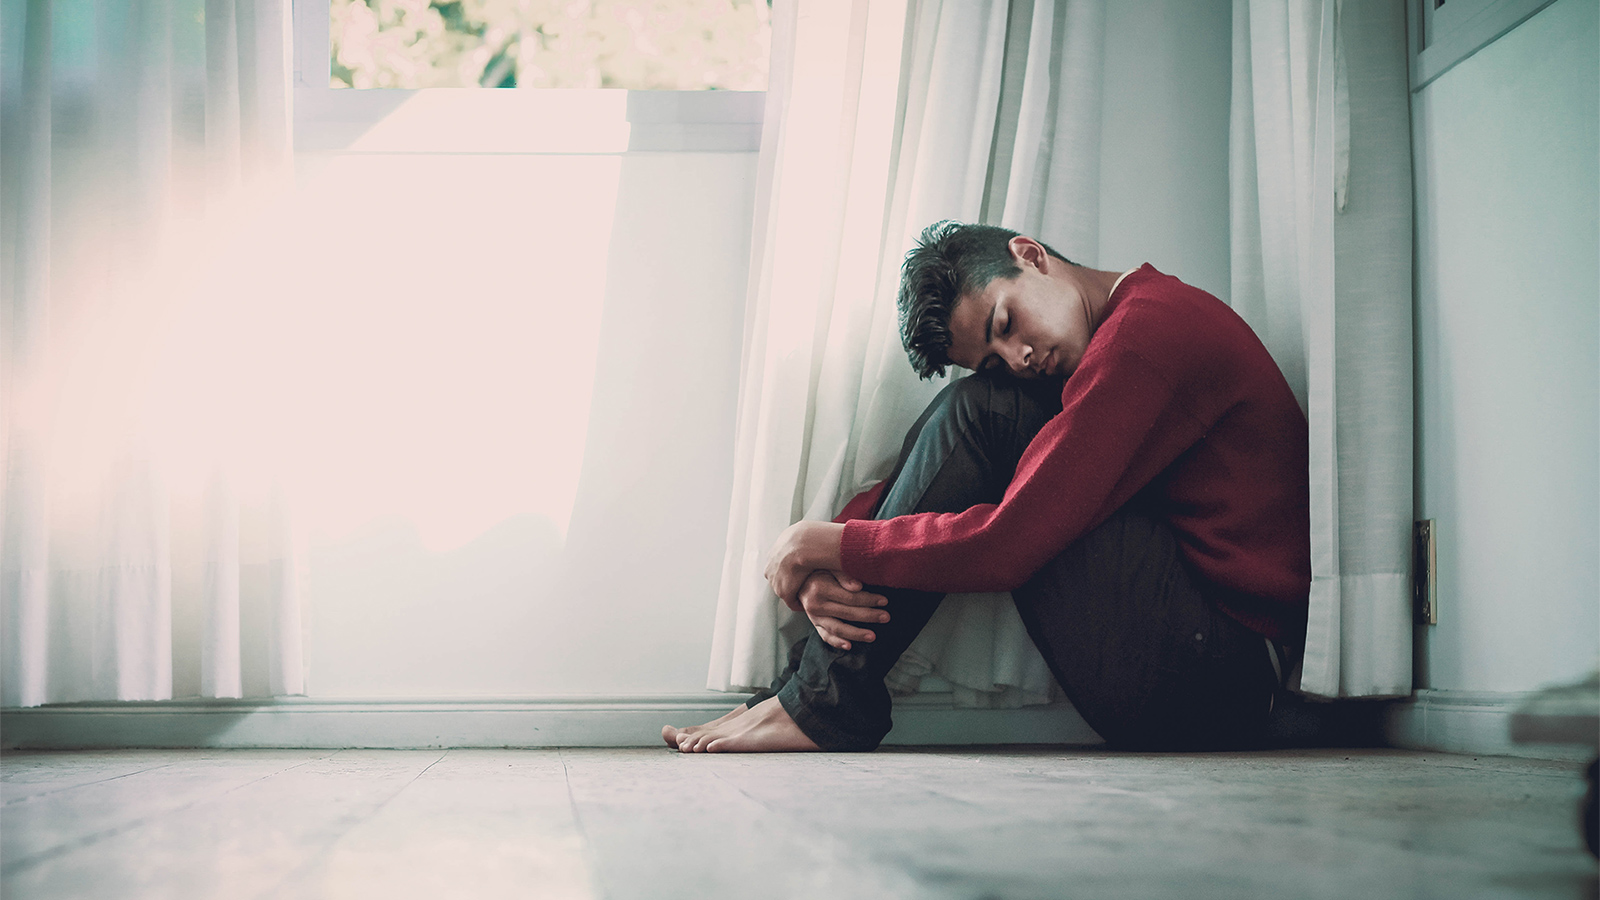 الشباب العربي في معظمه يعاني من اكتئاب مزمن لا يتم تشخيصه، وبالتالي لا يتم علاجه، ويتم تفسير هذا الاكتئاب بمصطلحات الهدف منها جعل الحالة أشبه بالأمر الطبيعي